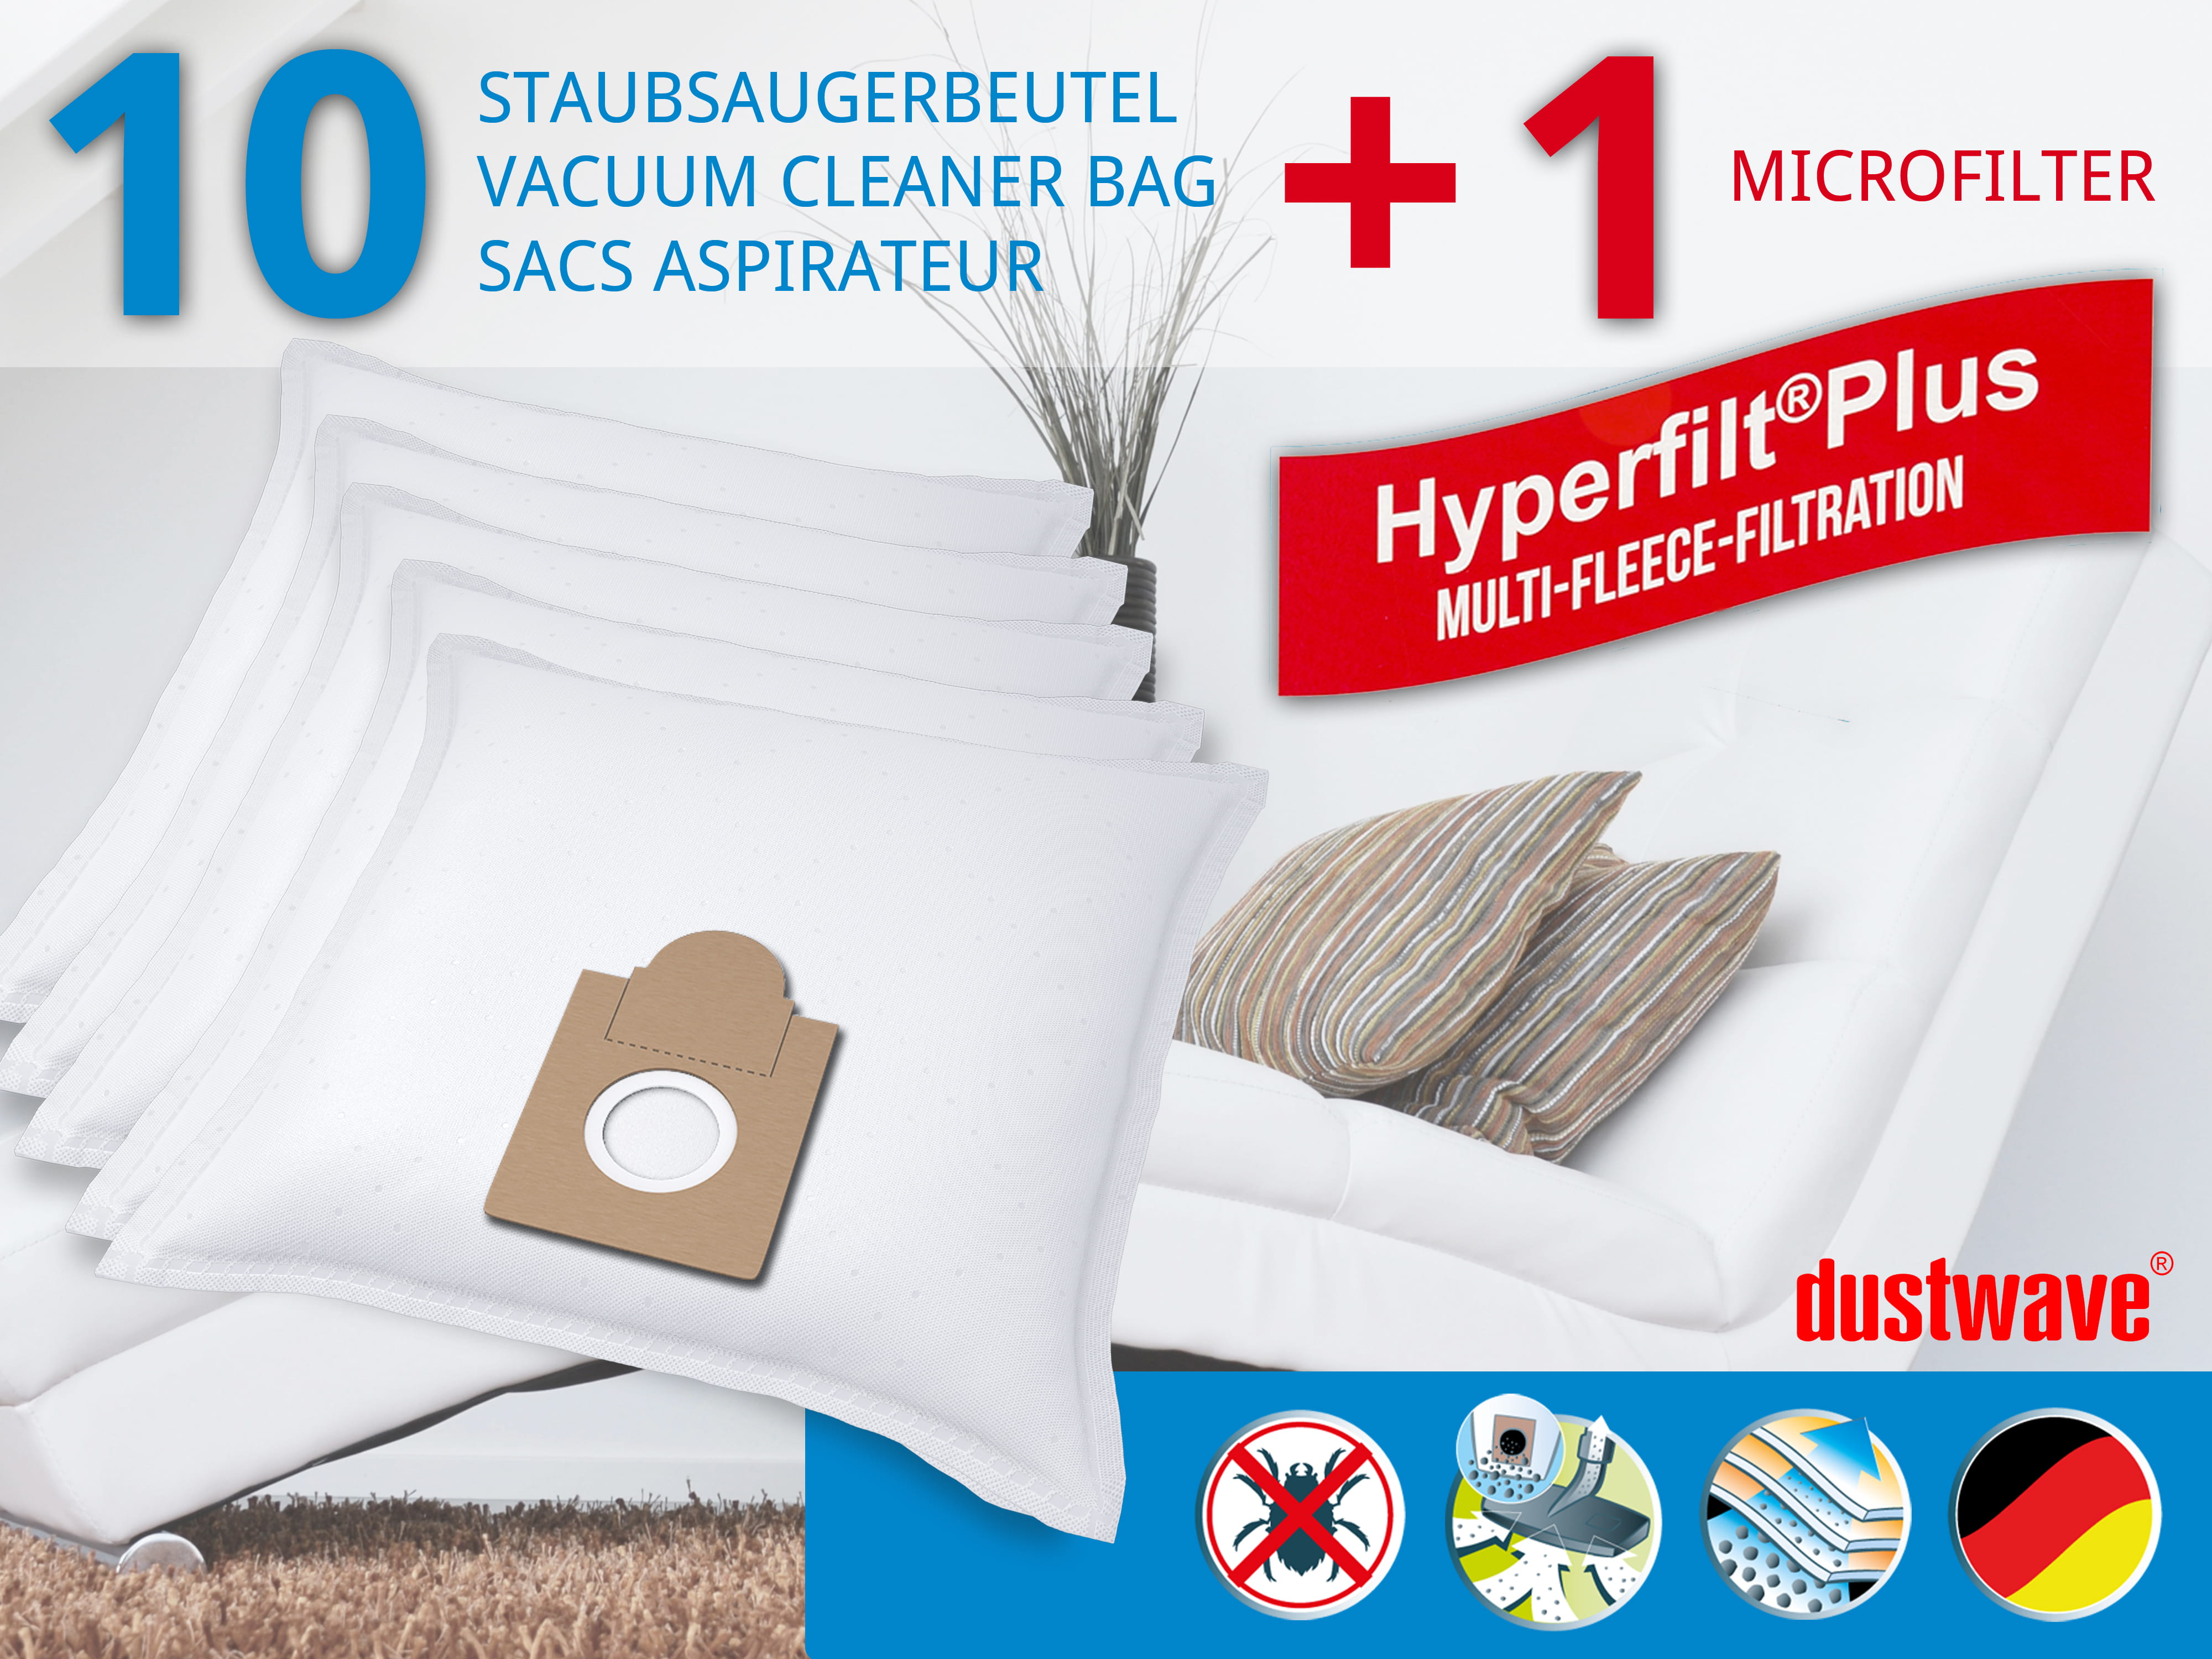 Dustwave® 10 Staubsaugerbeutel für Ariete Aspirium 2372…. 2386 Serie - hocheffizient, mehrlagiges Mikrovlies mit Hygieneverschluss - Made in Germany